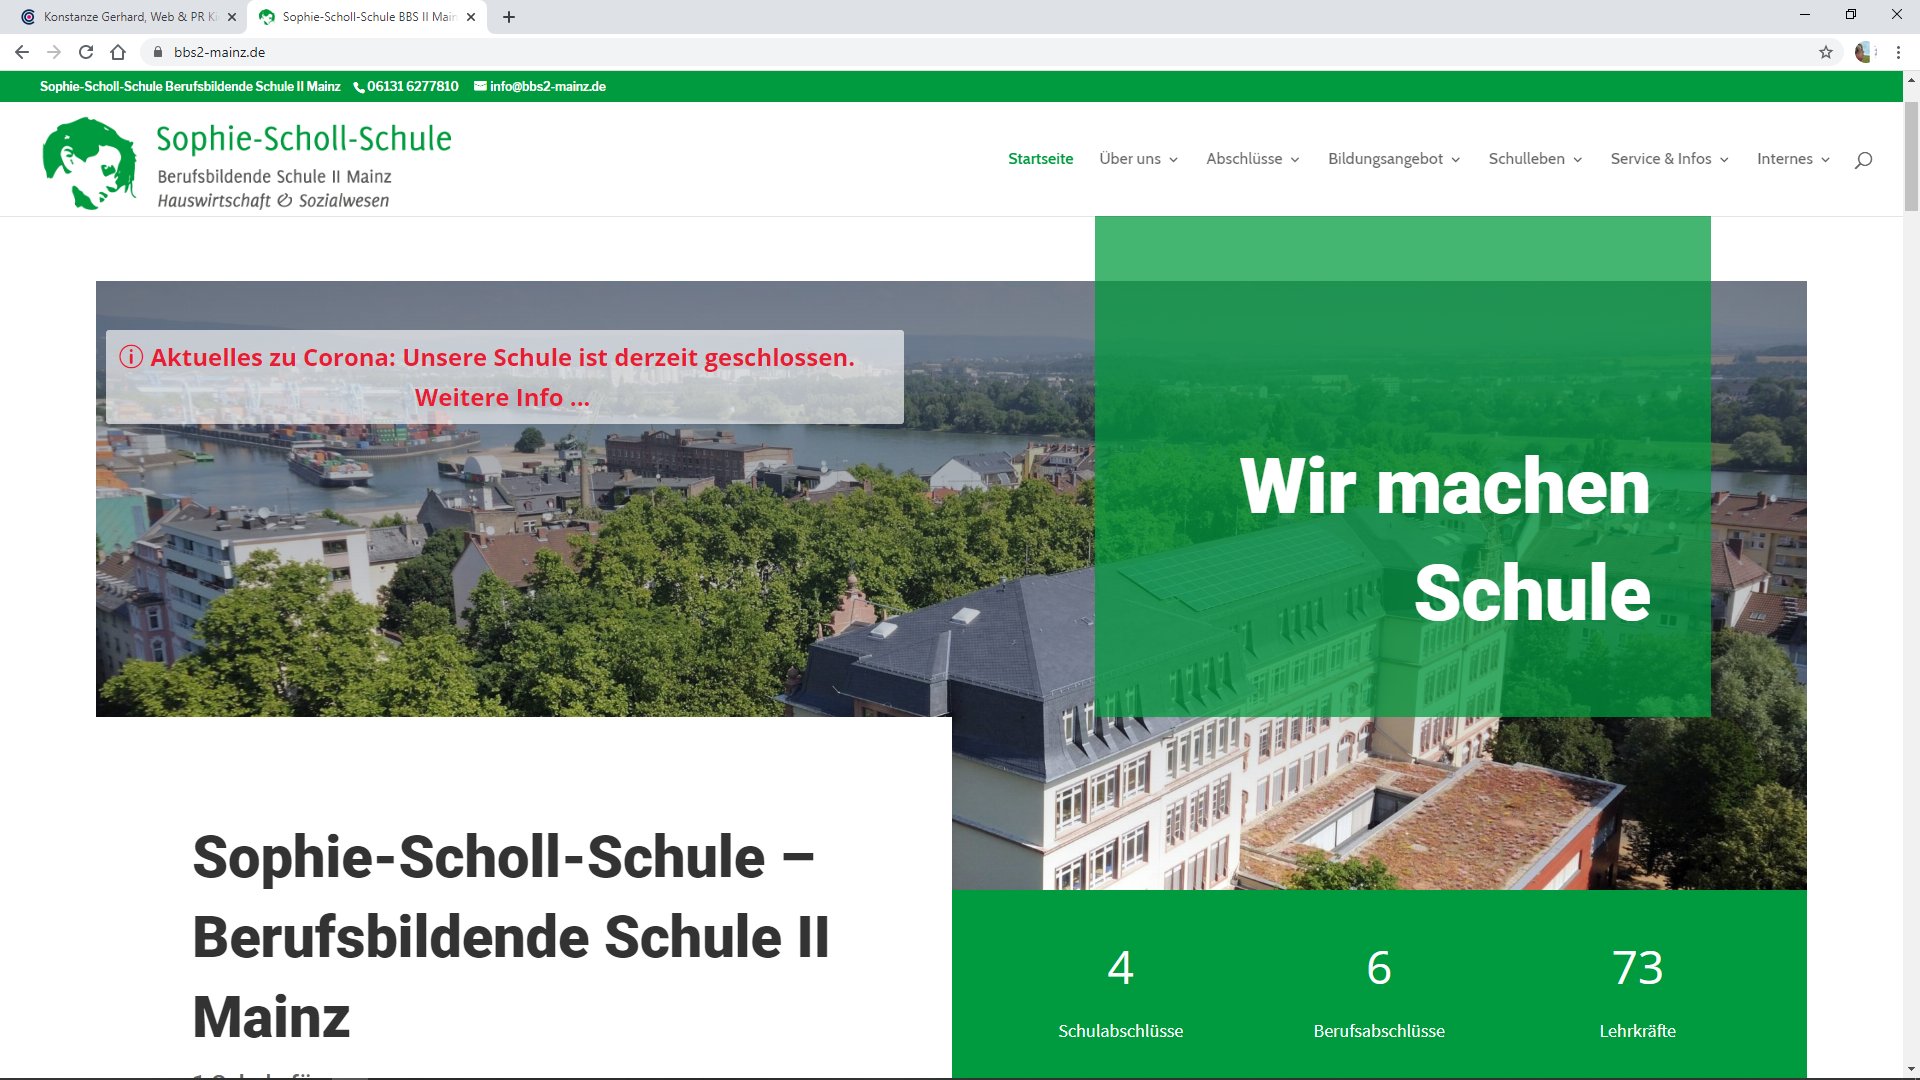 Sophie-Scholl-Schule, BBS II, Mainz